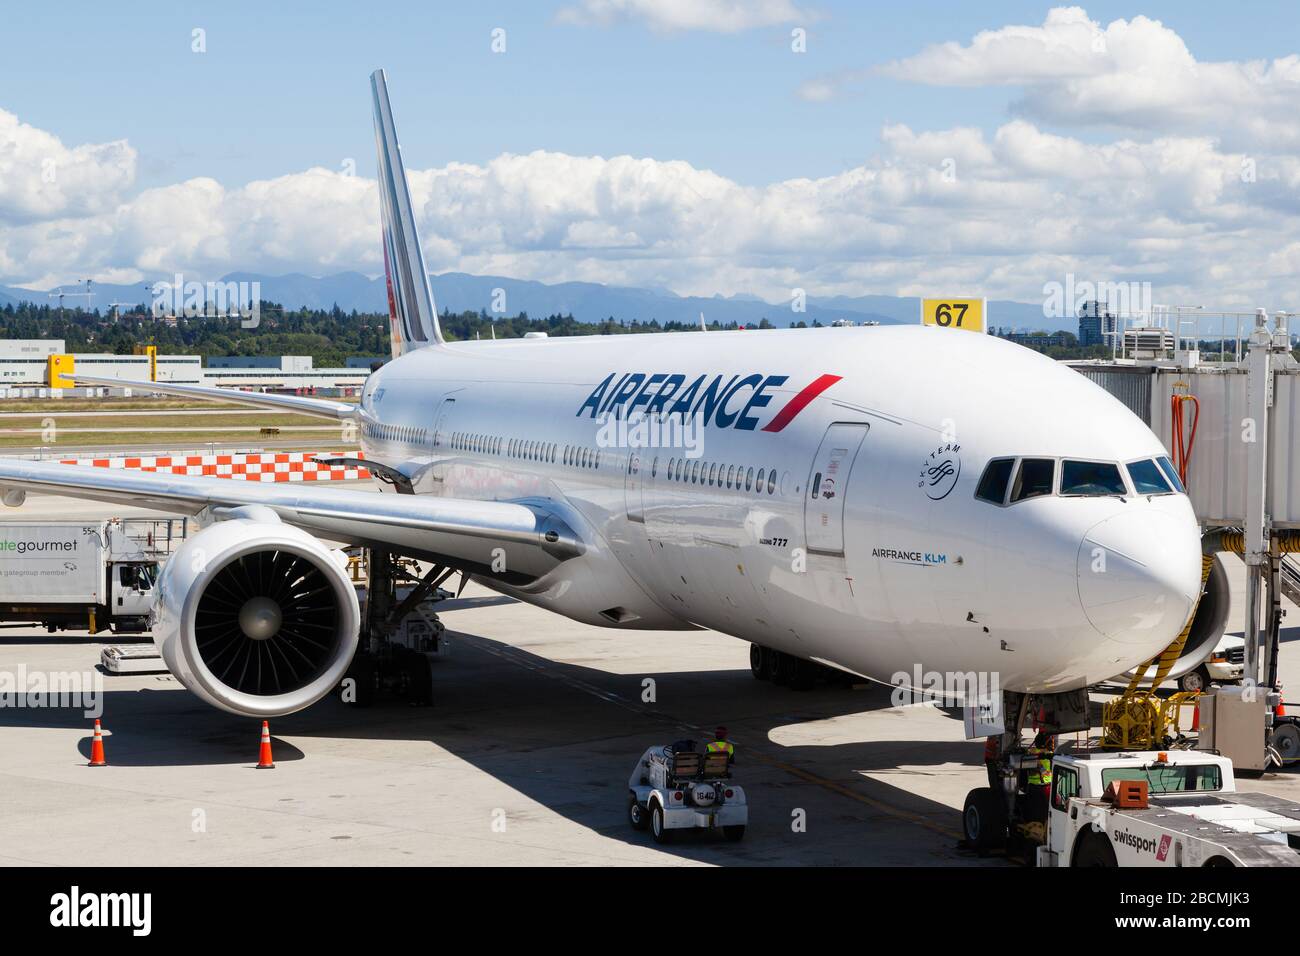 Vancouver, Canada - 3 juillet 2017 : un avion Boeing 777 d'Air France Airlines est desservi sur le tarmac de l'aéroport international de Vancouver. Banque D'Images